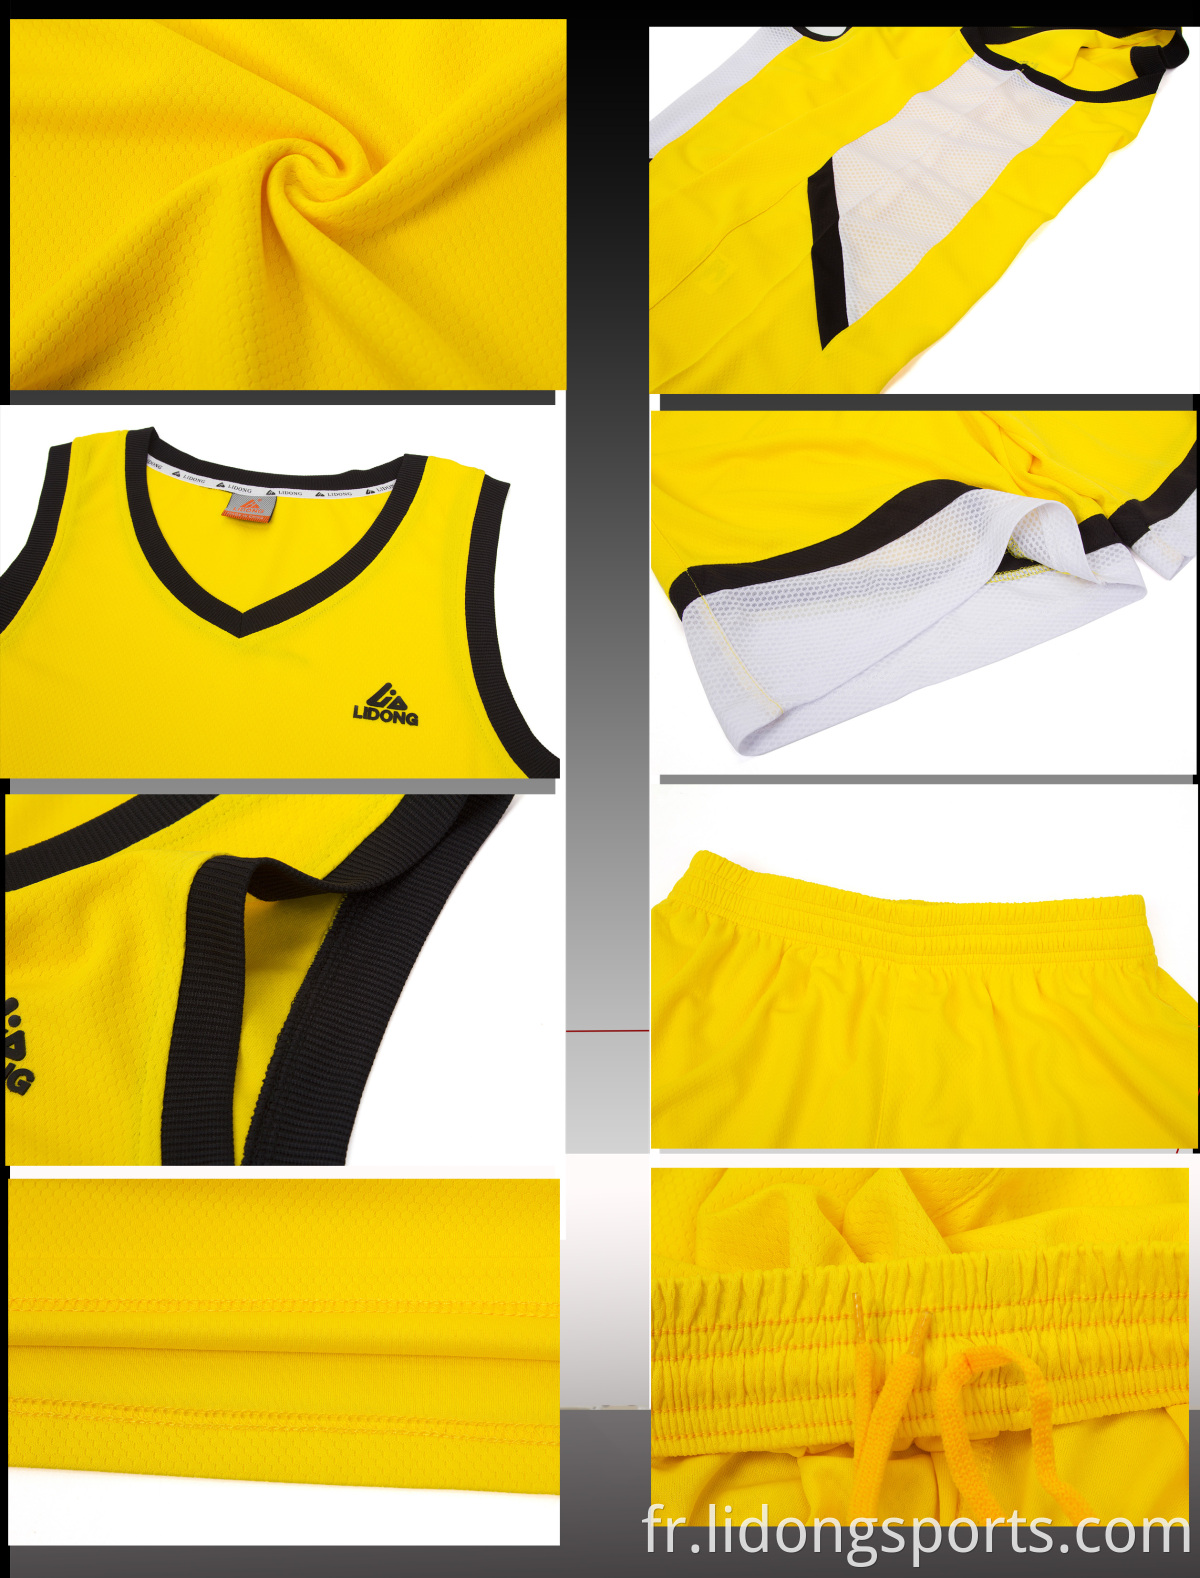 Personnaliser les maillots de basket-ball pour la mode jeunesse Meilleur conception d'uniforme de maillot de basket-ball